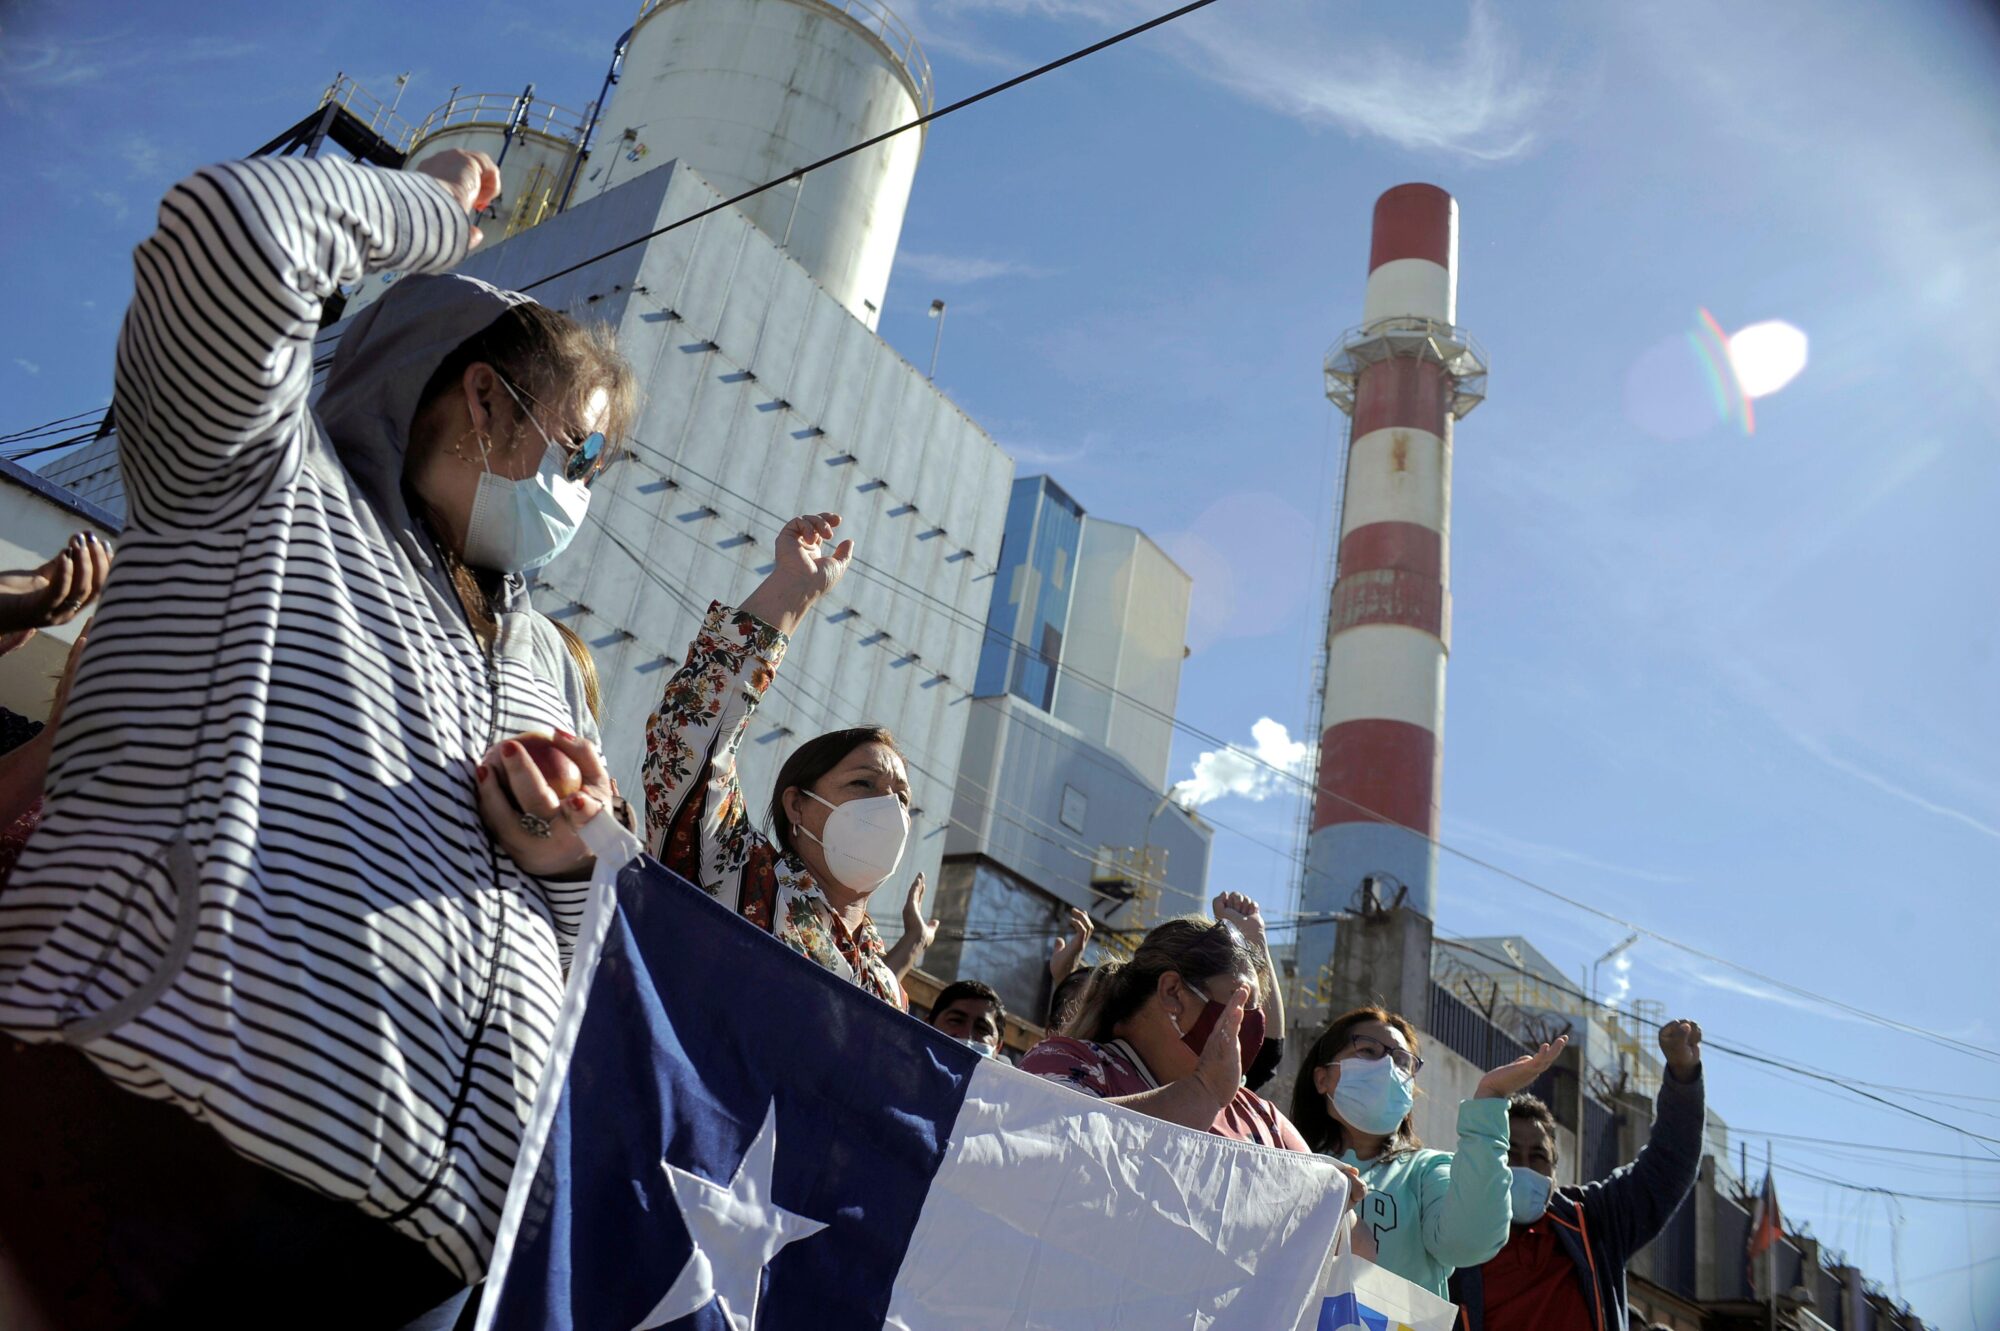 manifestantes sosteniendo una bandera chilena frente a una central termoeléctrica